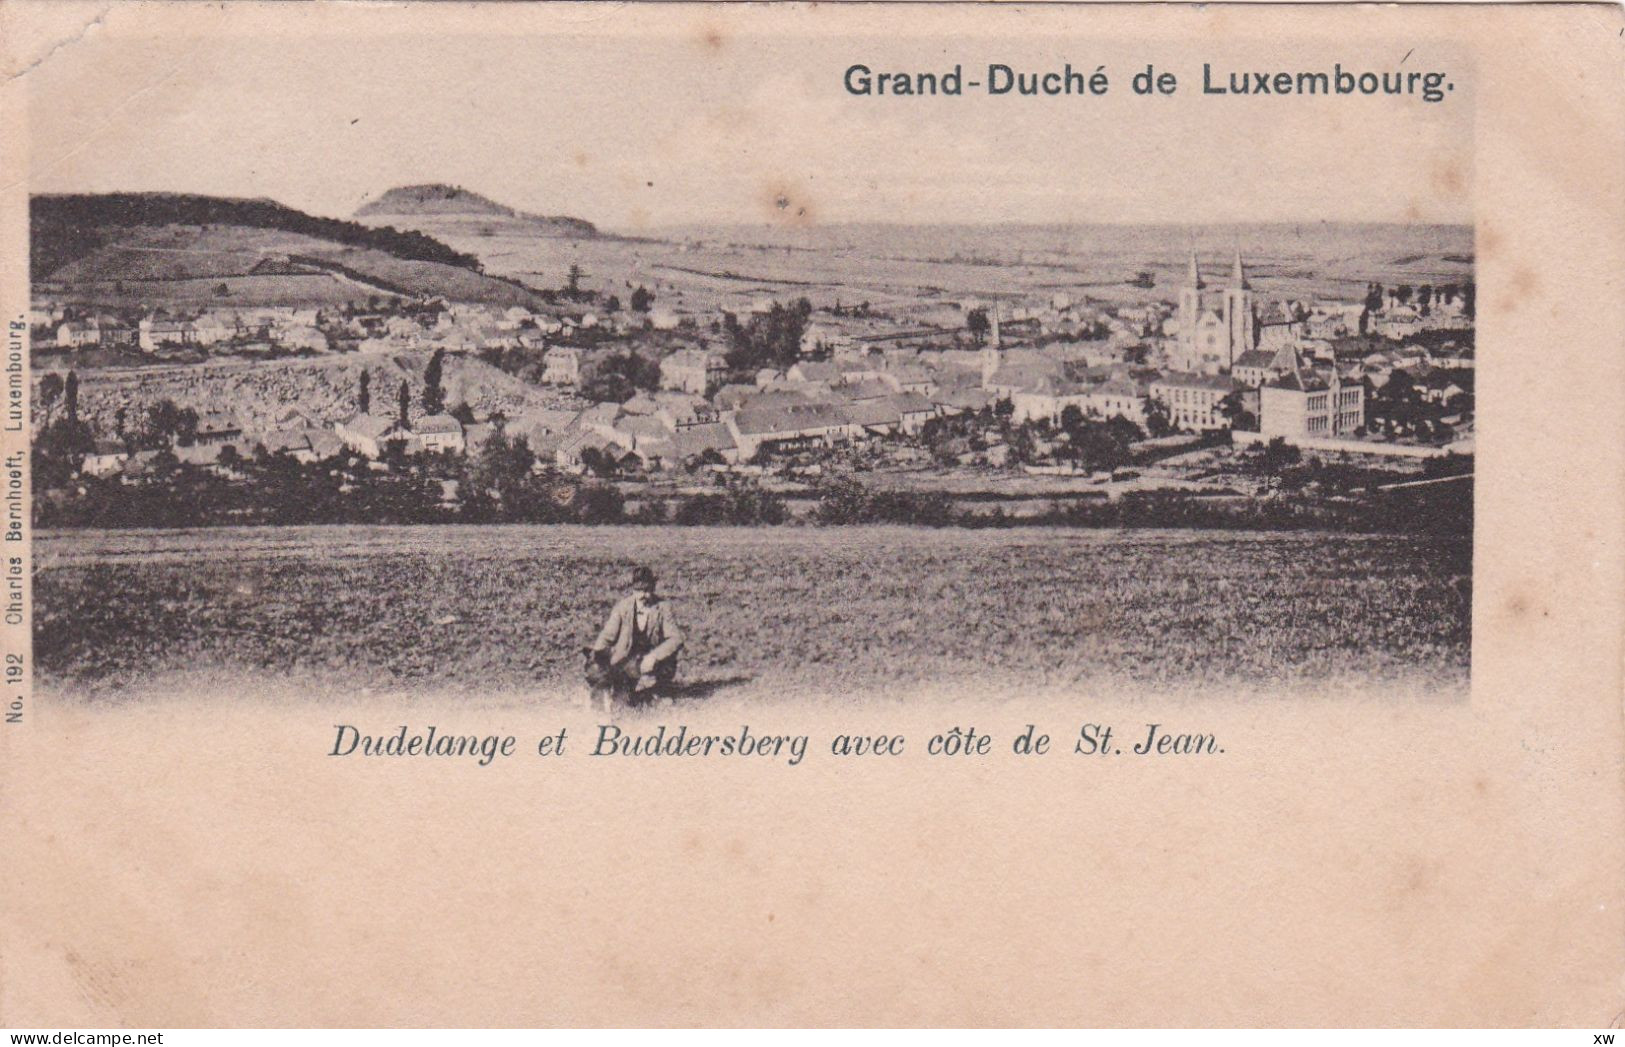 LUXEMBOURG - GRAND-DUCHE DE LUXEMBOURG - Dudelange Et Buddersberg Avec Côte De Saint-Jean - 15-03-24 - Esch-sur-Alzette